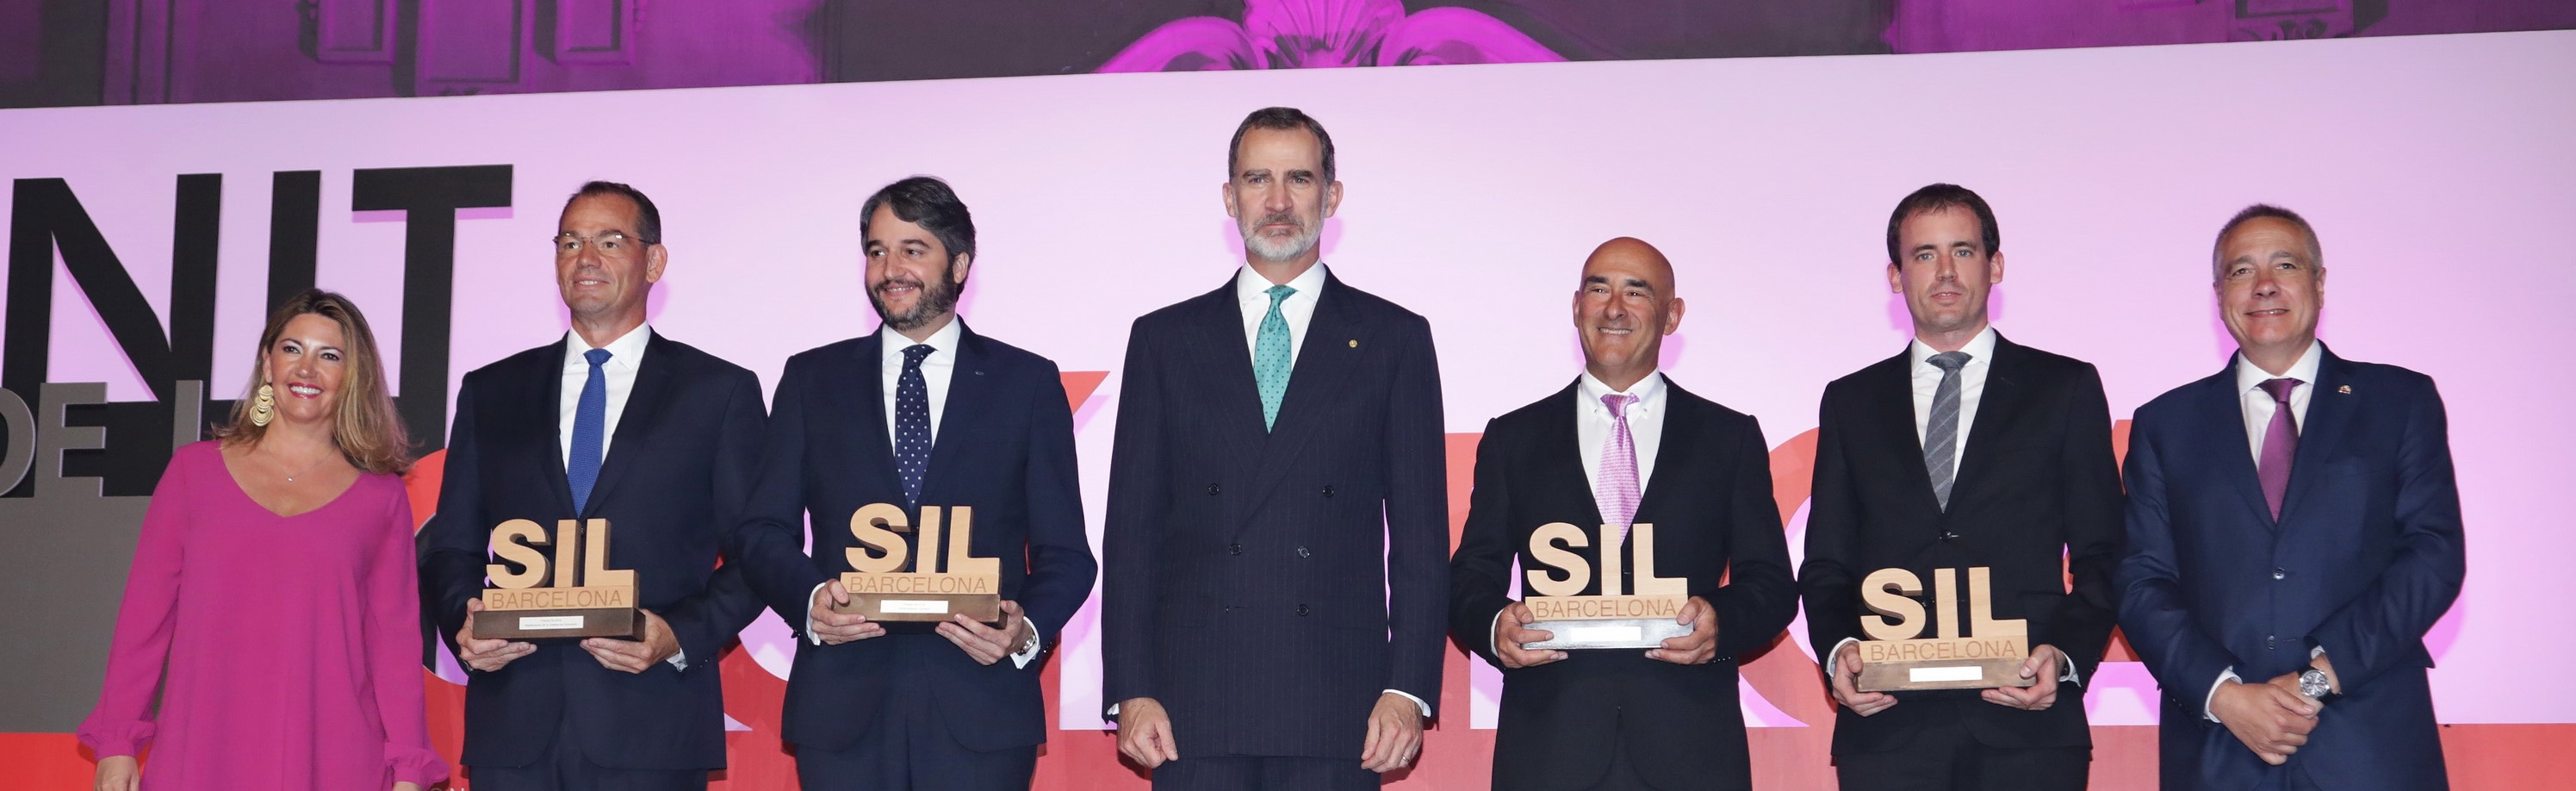 Ganadores de los premios SIL junto al rey de España